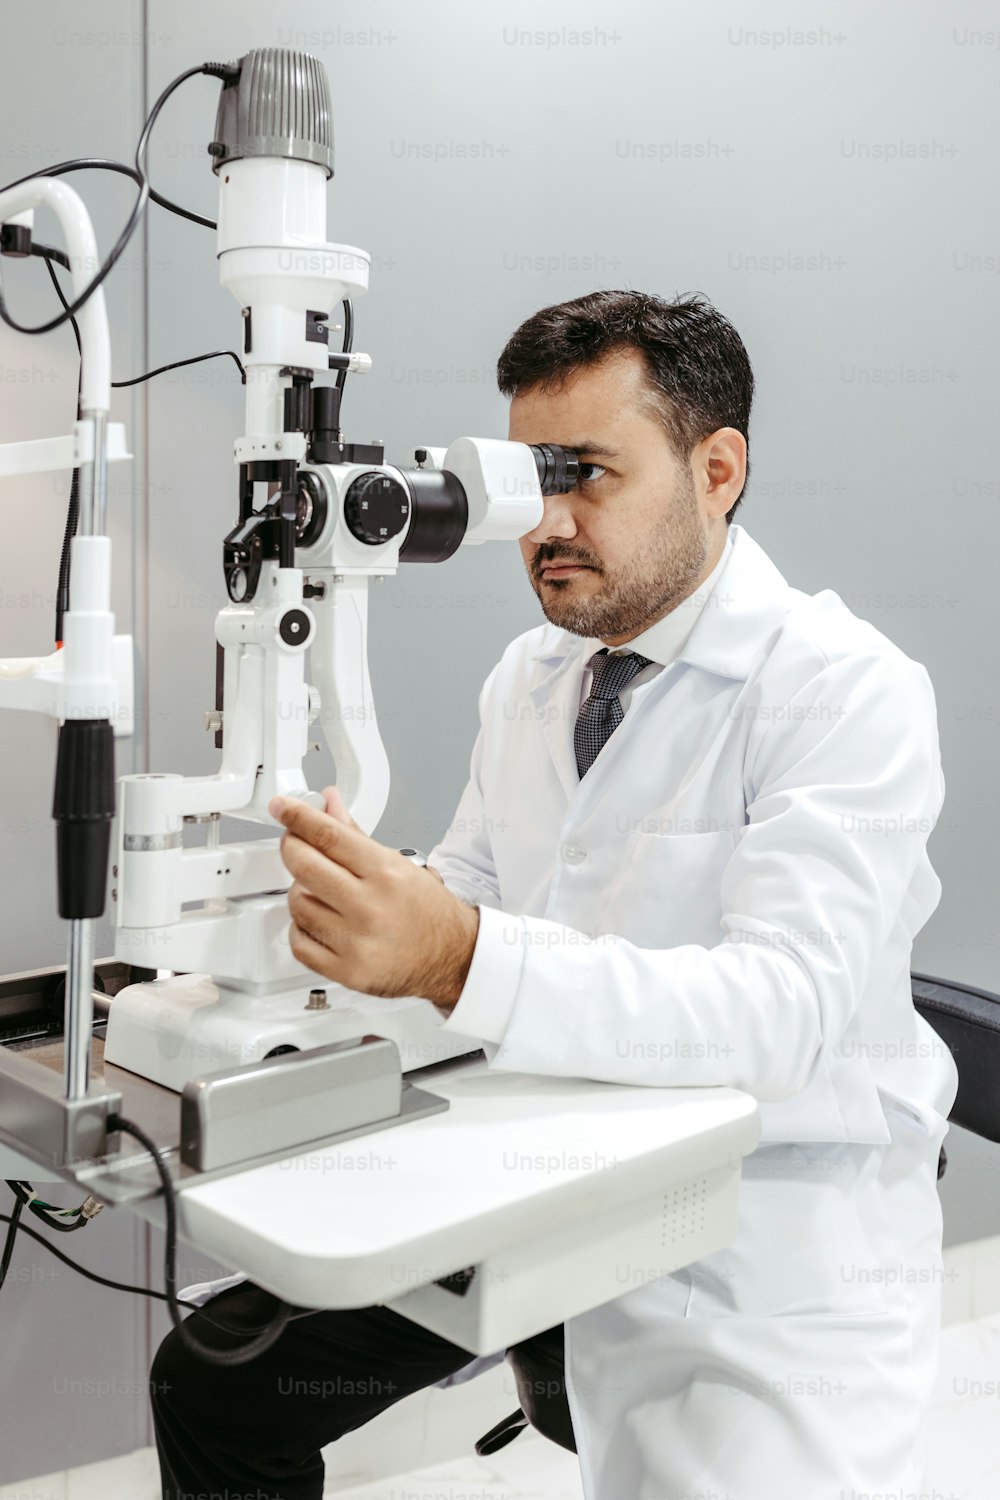 Un uomo in camice bianco che guarda attraverso un microscopio